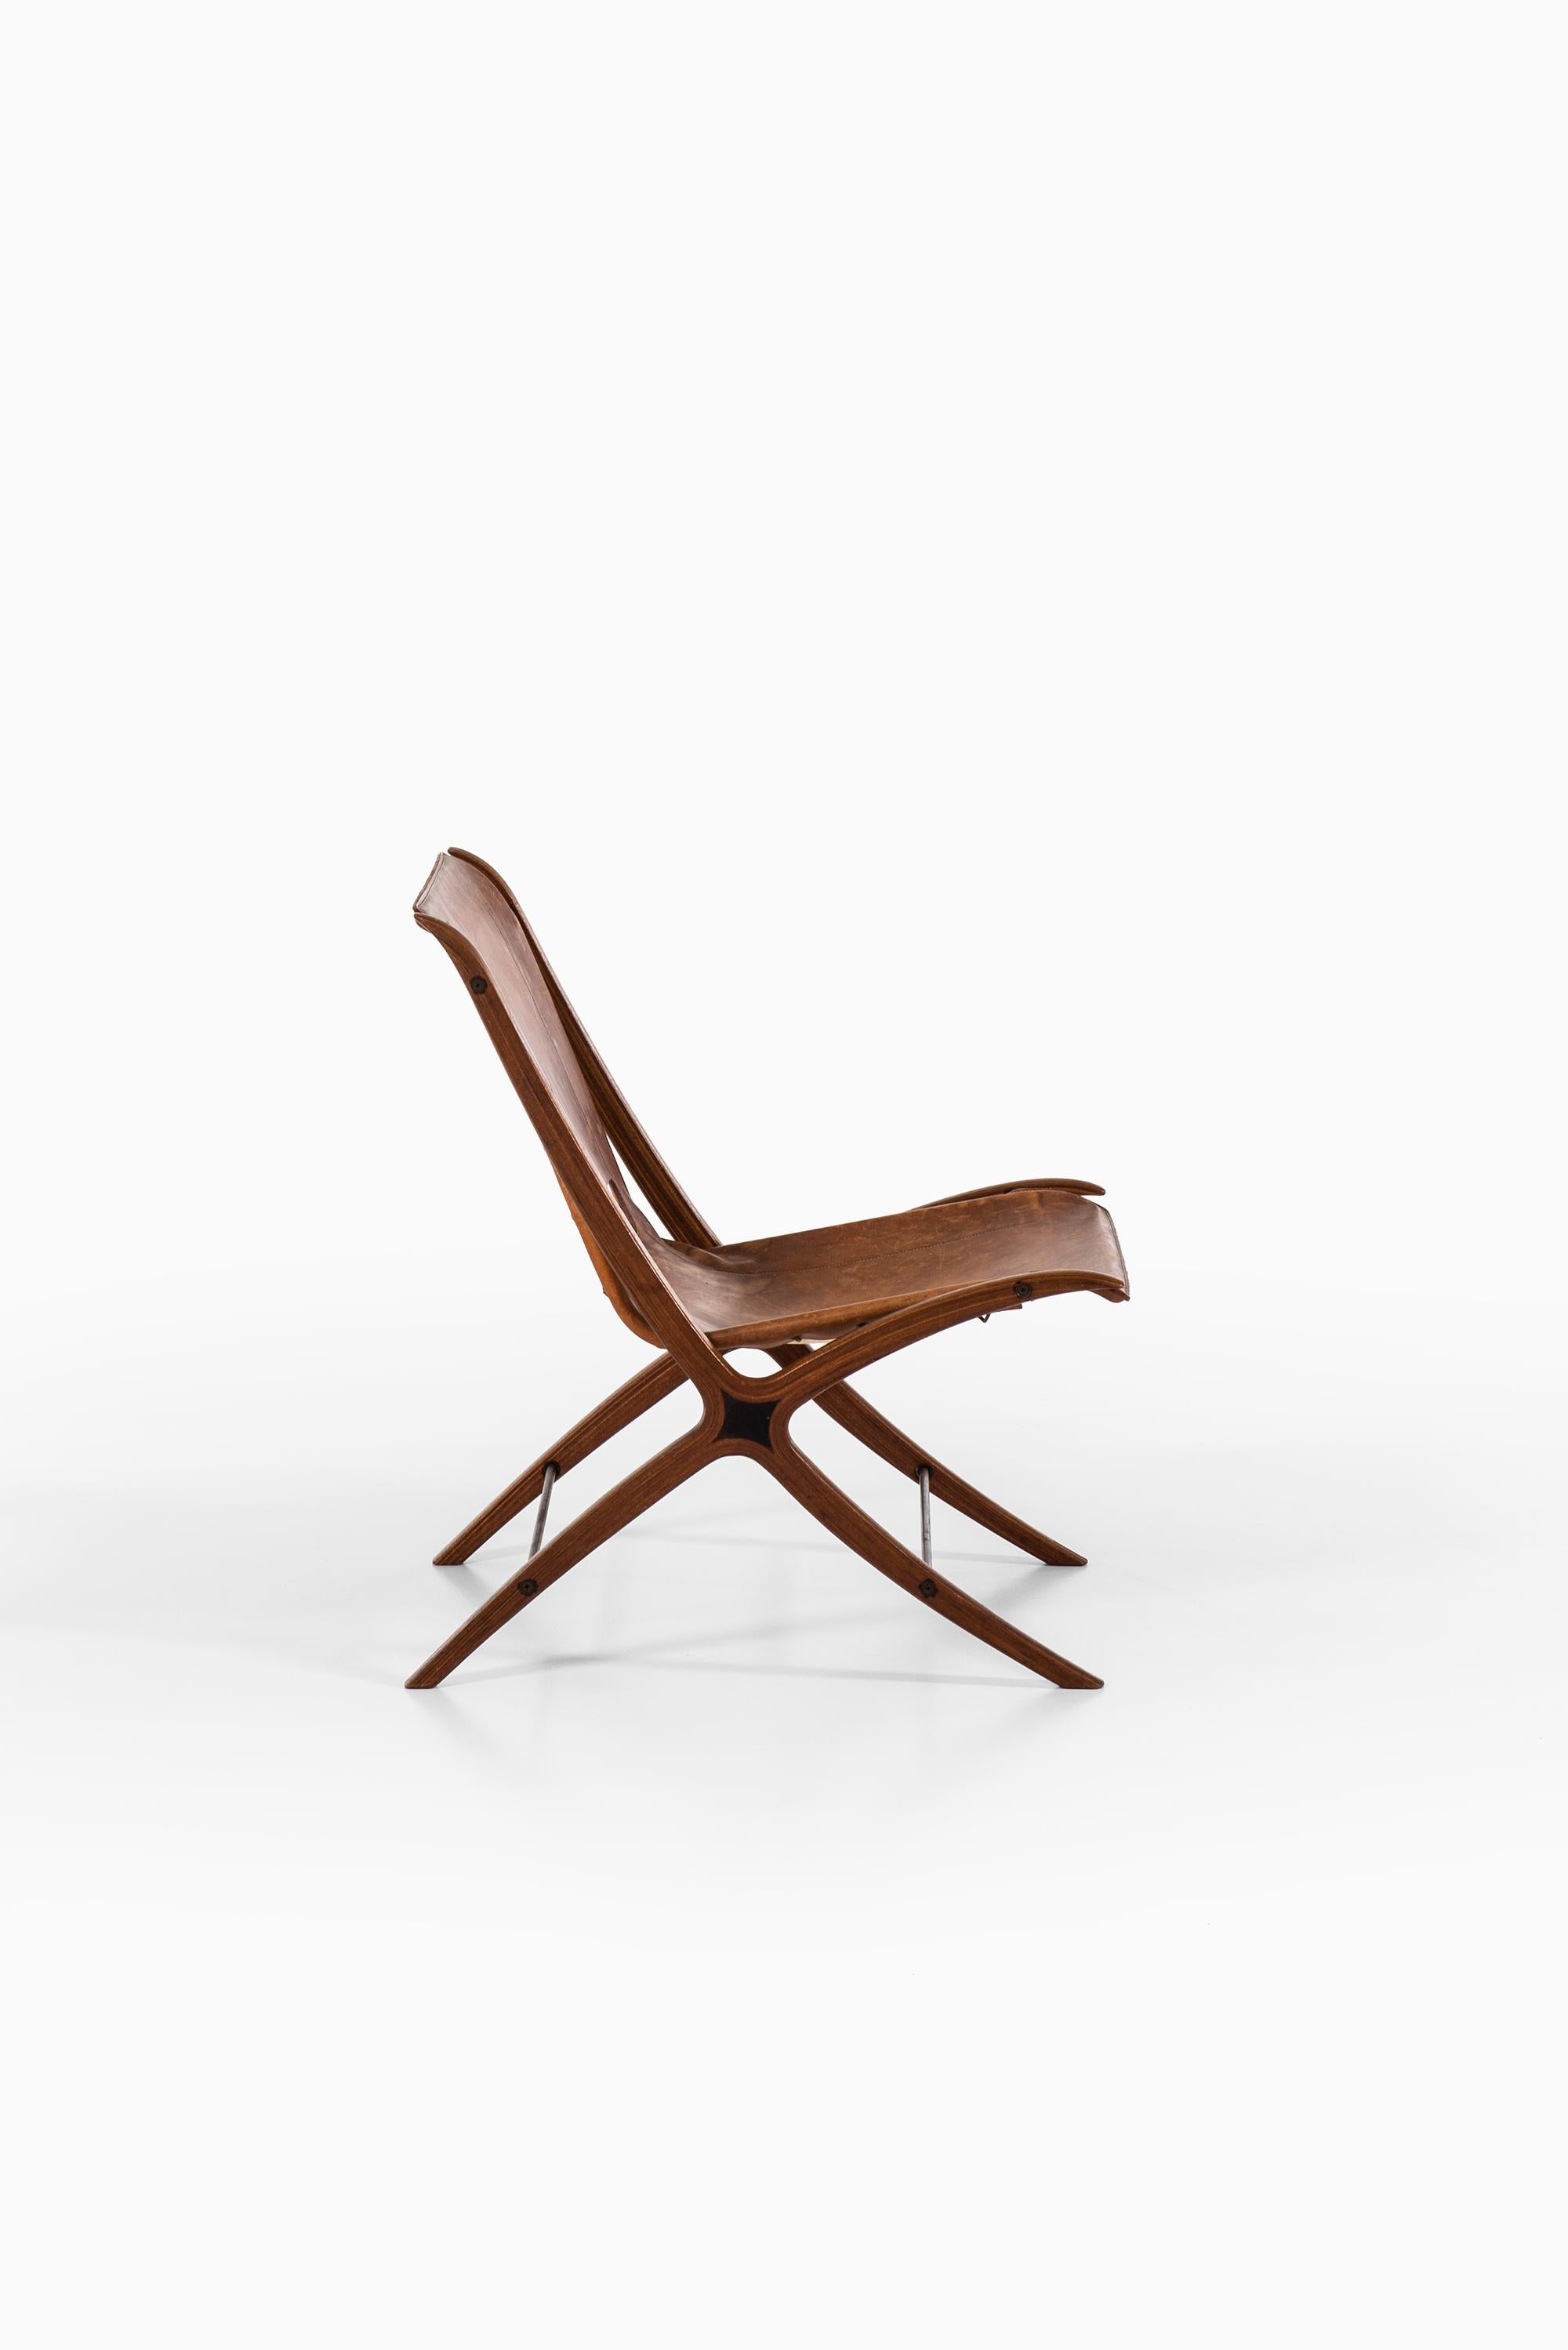 Seltener Sessel Modell X-chair / FH-6135 entworfen von Peter Hvidt & Orla Mølgaard-Nielsen. Produziert von Fritz Hansen in Dänemark.